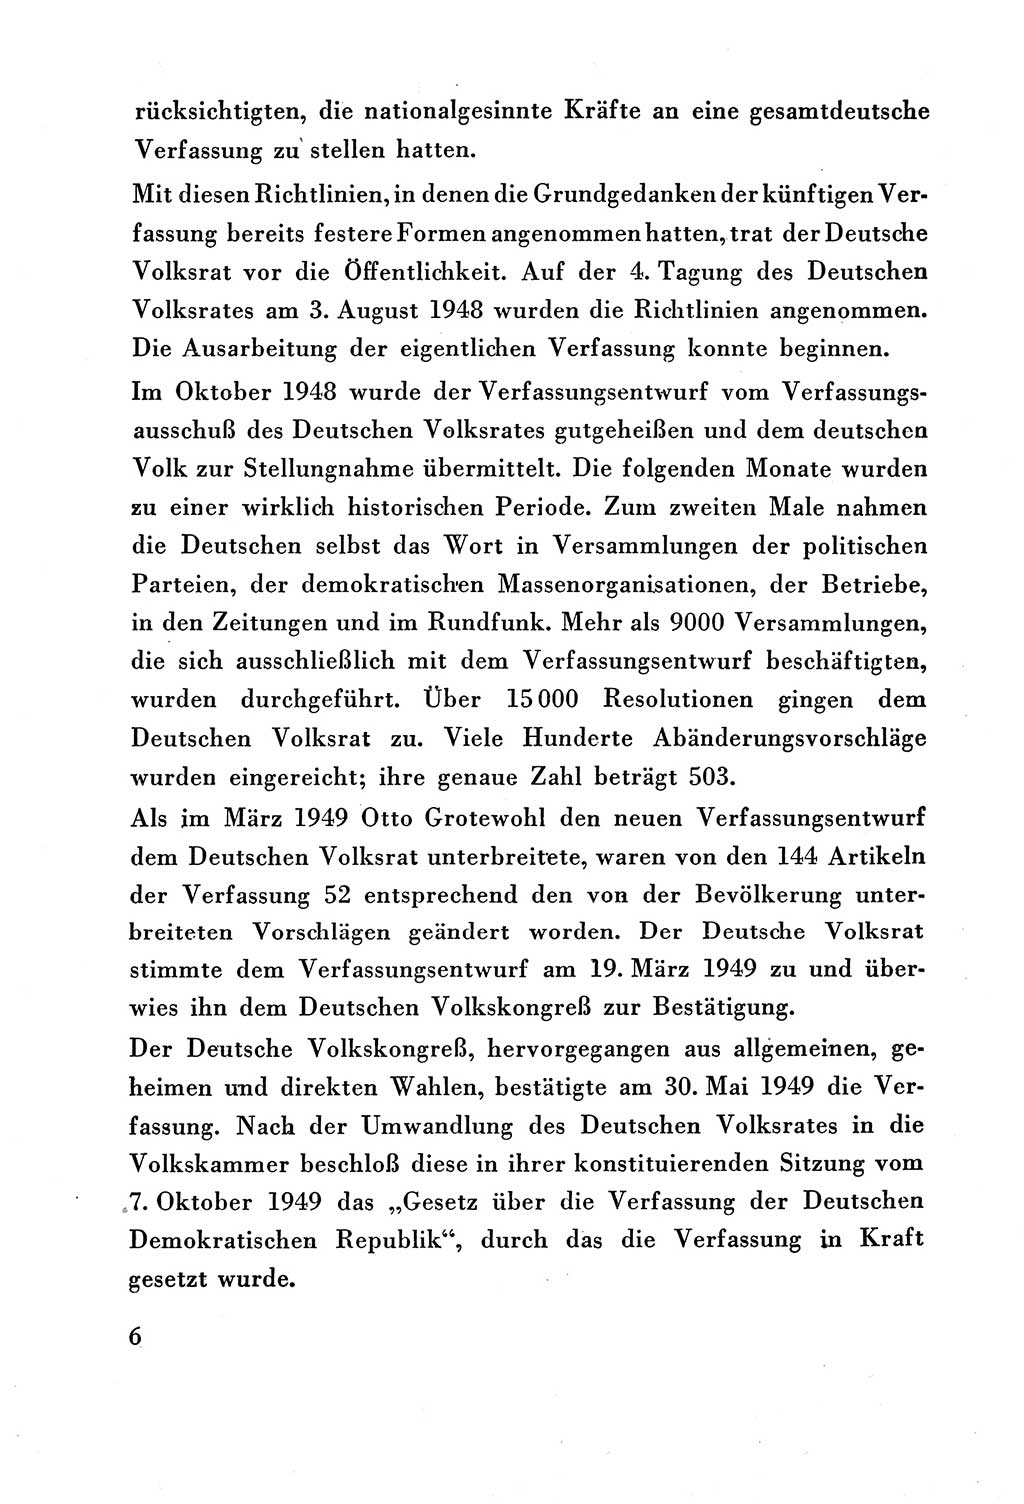 Verfassung der Deutschen Demokratischen Republik (DDR) vom 7. Oktober 1949, Seite 6 (Verf. DDR 1949, S. 6)